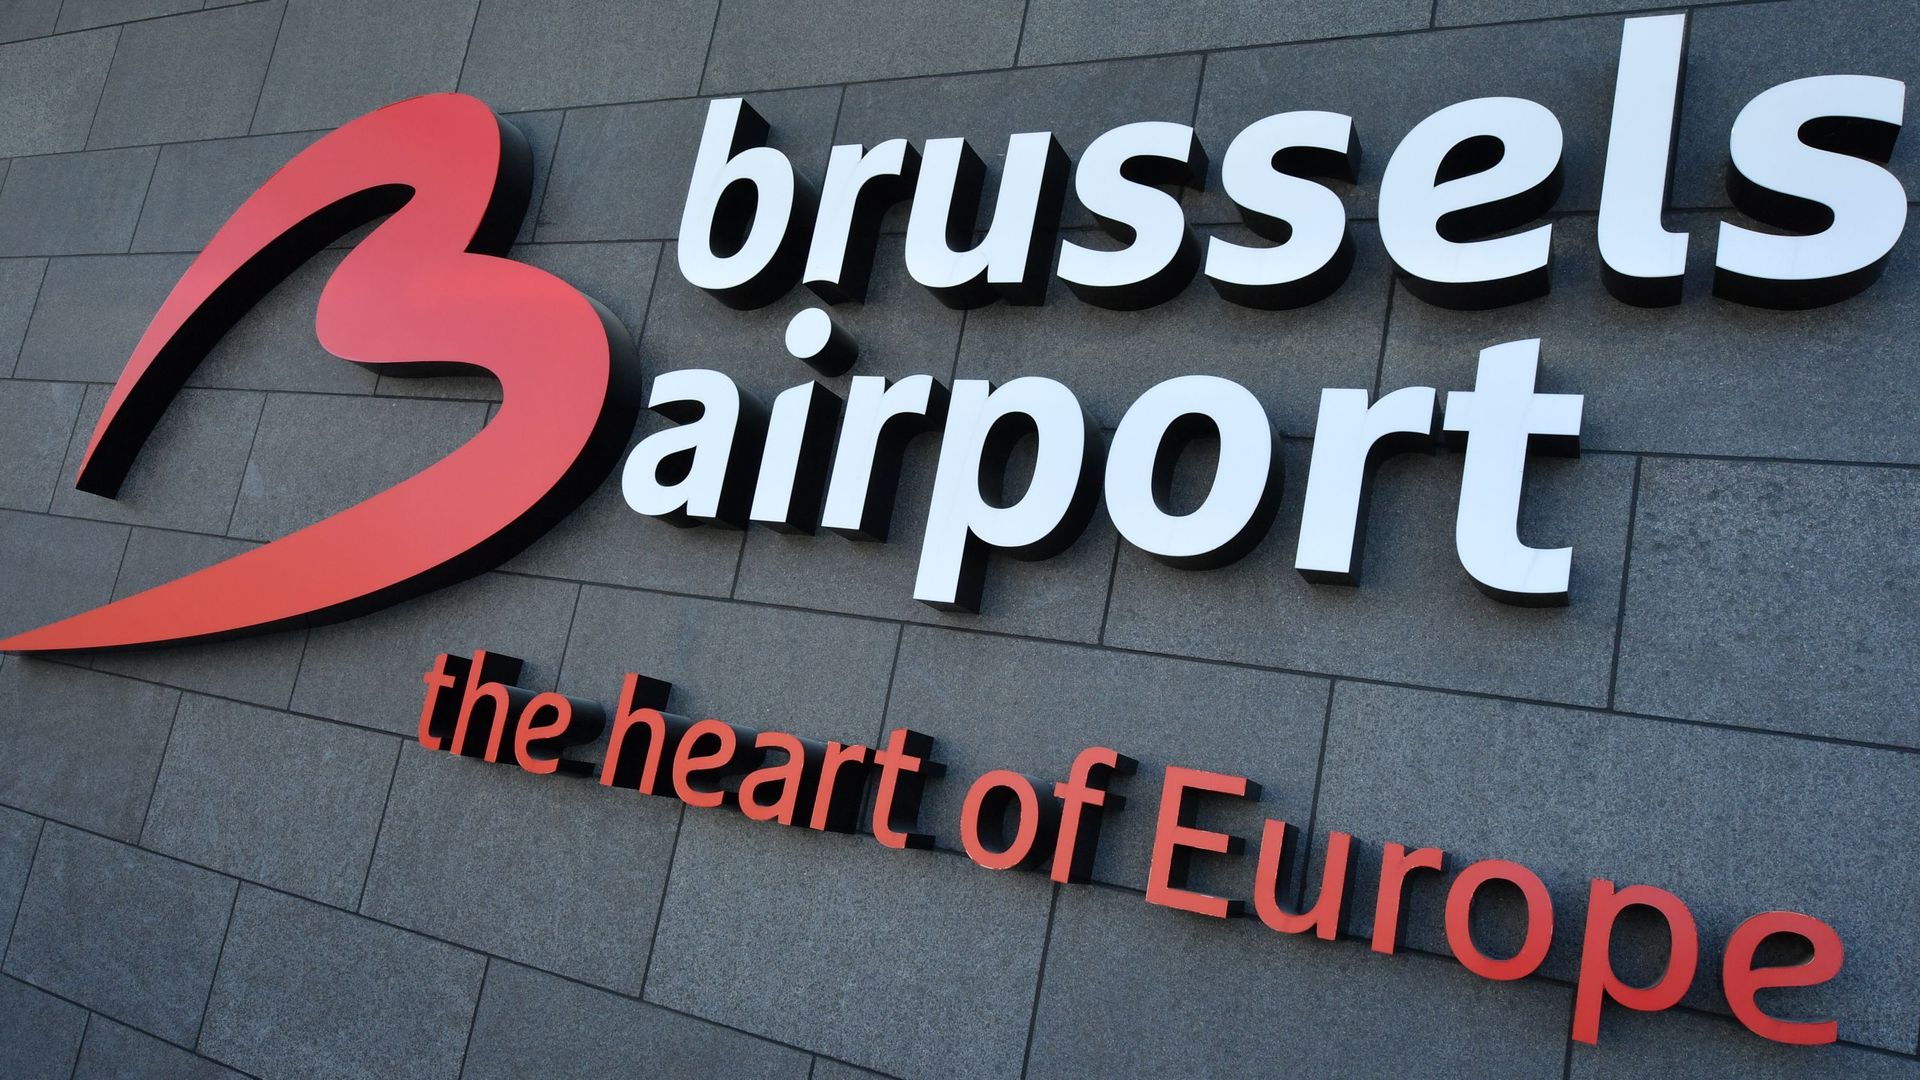 Lancement de la plateforme de dialogue sur l'expansion de Brussels Airport le 22 juin